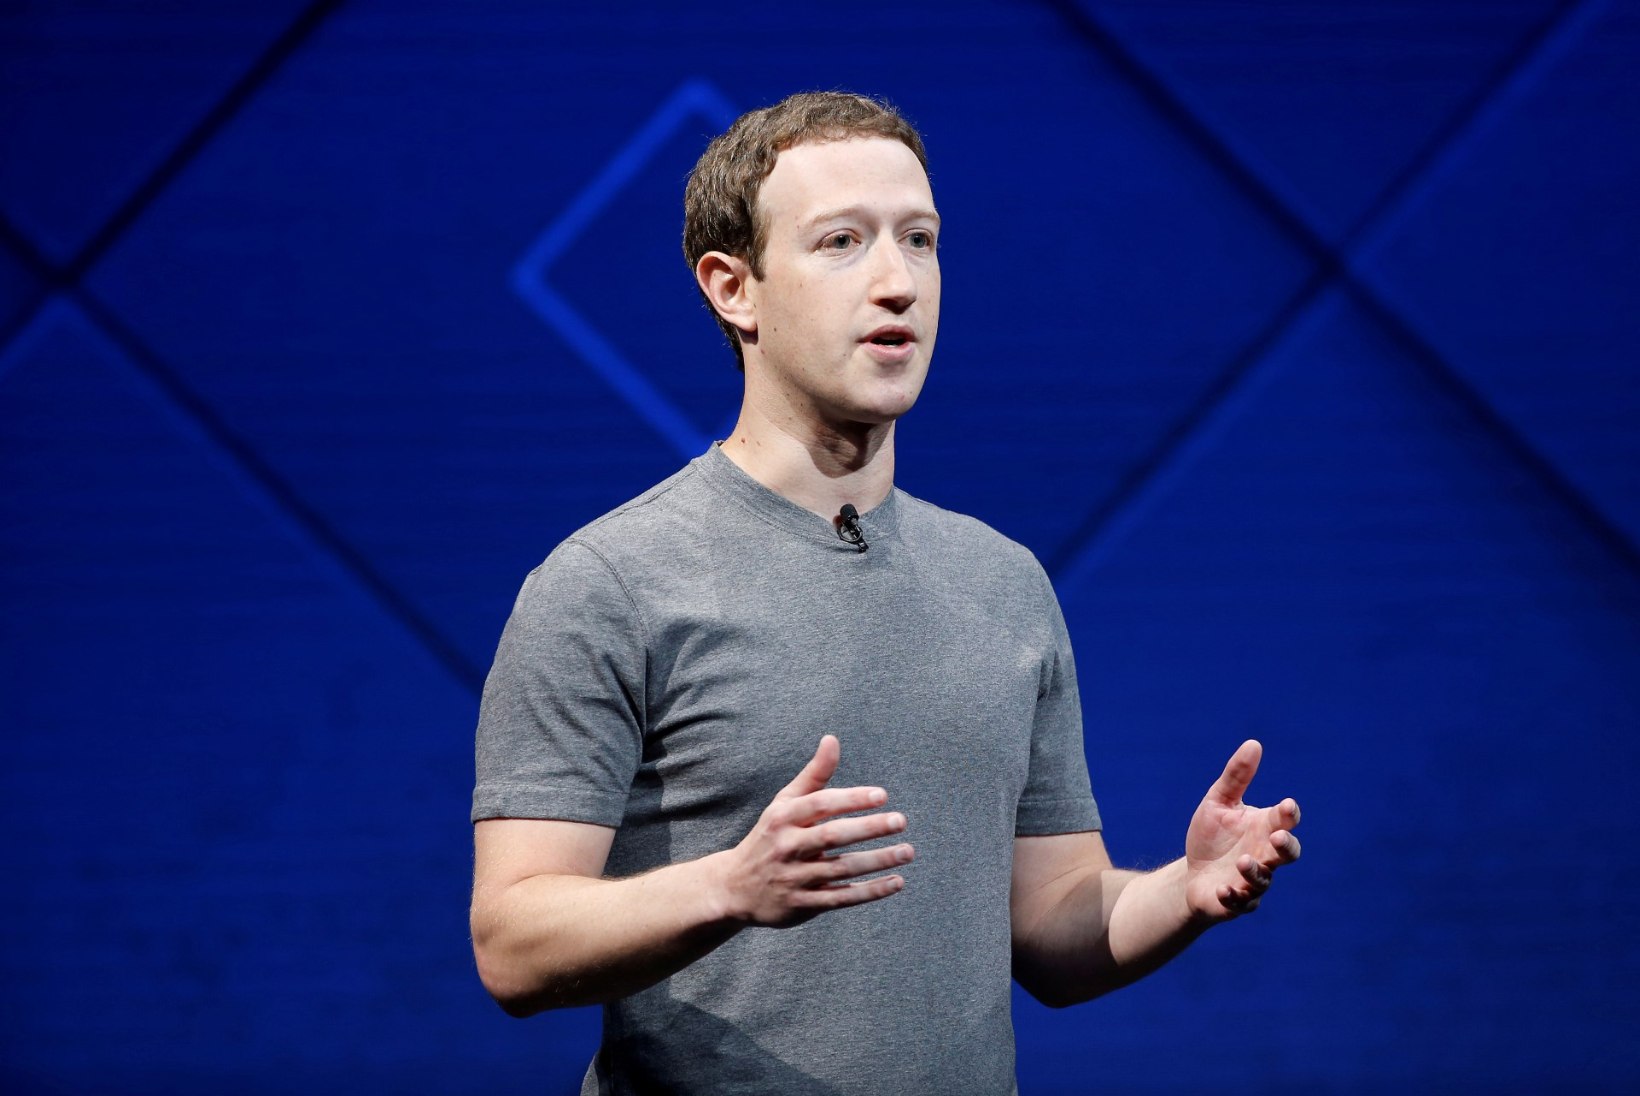 Zuckerbergi korraldus toob Facebooki olulise uuenduse